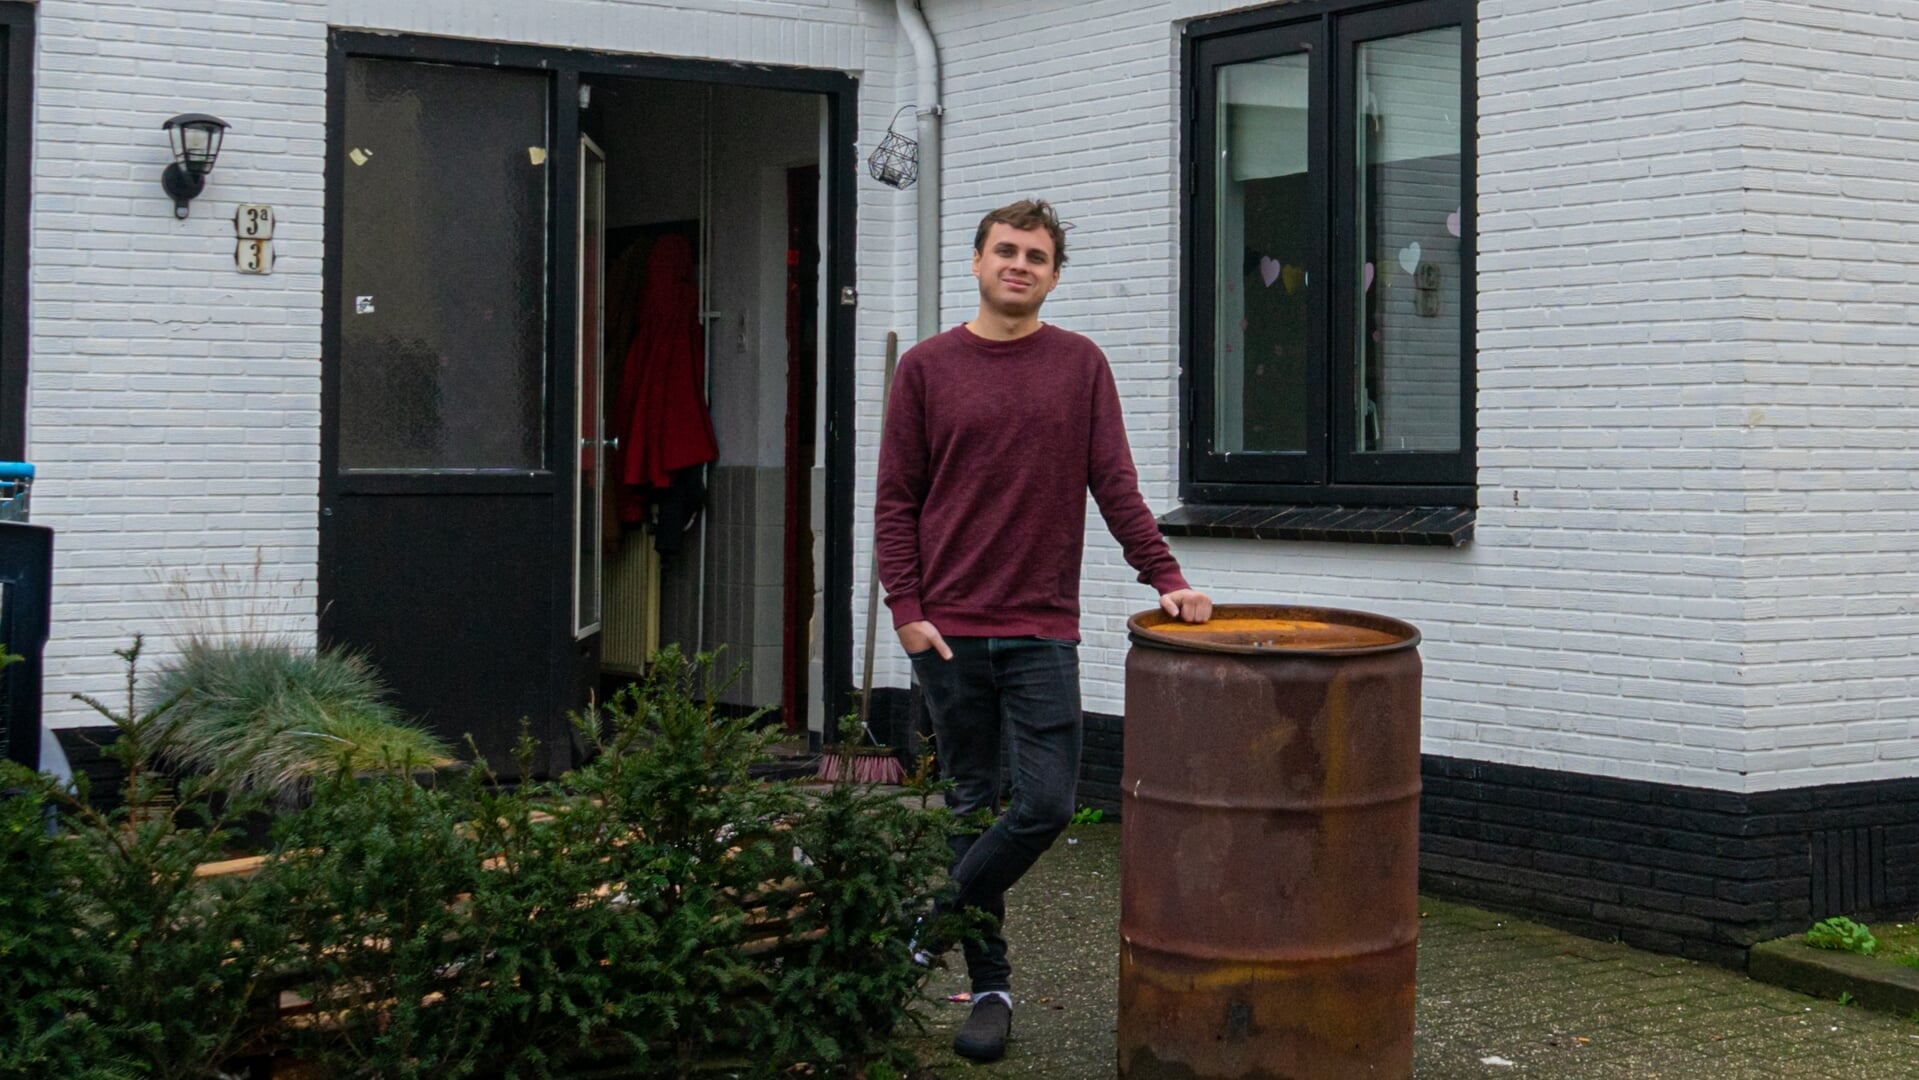 In het studentenhuis van Jeremy van Braak (27) viel eind vorig jaar een energierekening van 2459 euro op de mat